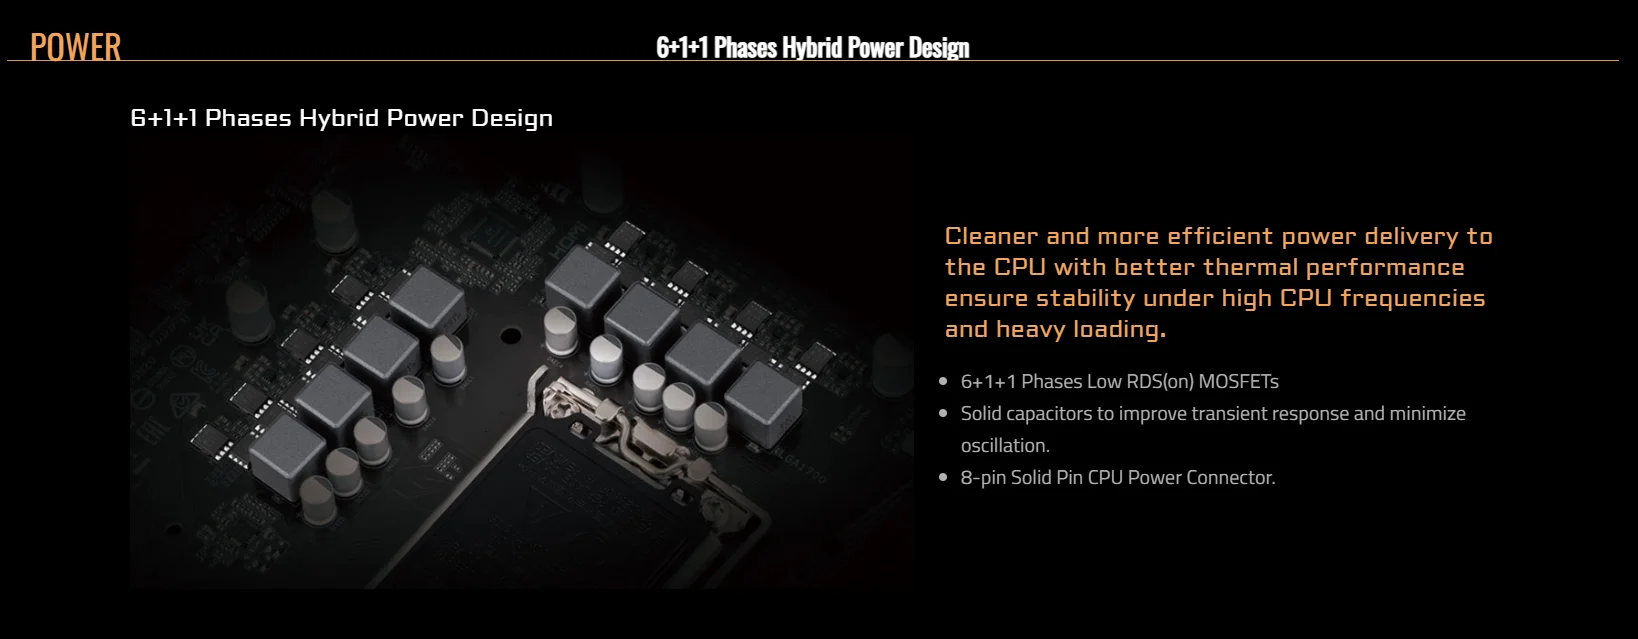 H610M H V2 DDR4 rev 1 0 Key Features Motherboard GIGABYTE Global 1